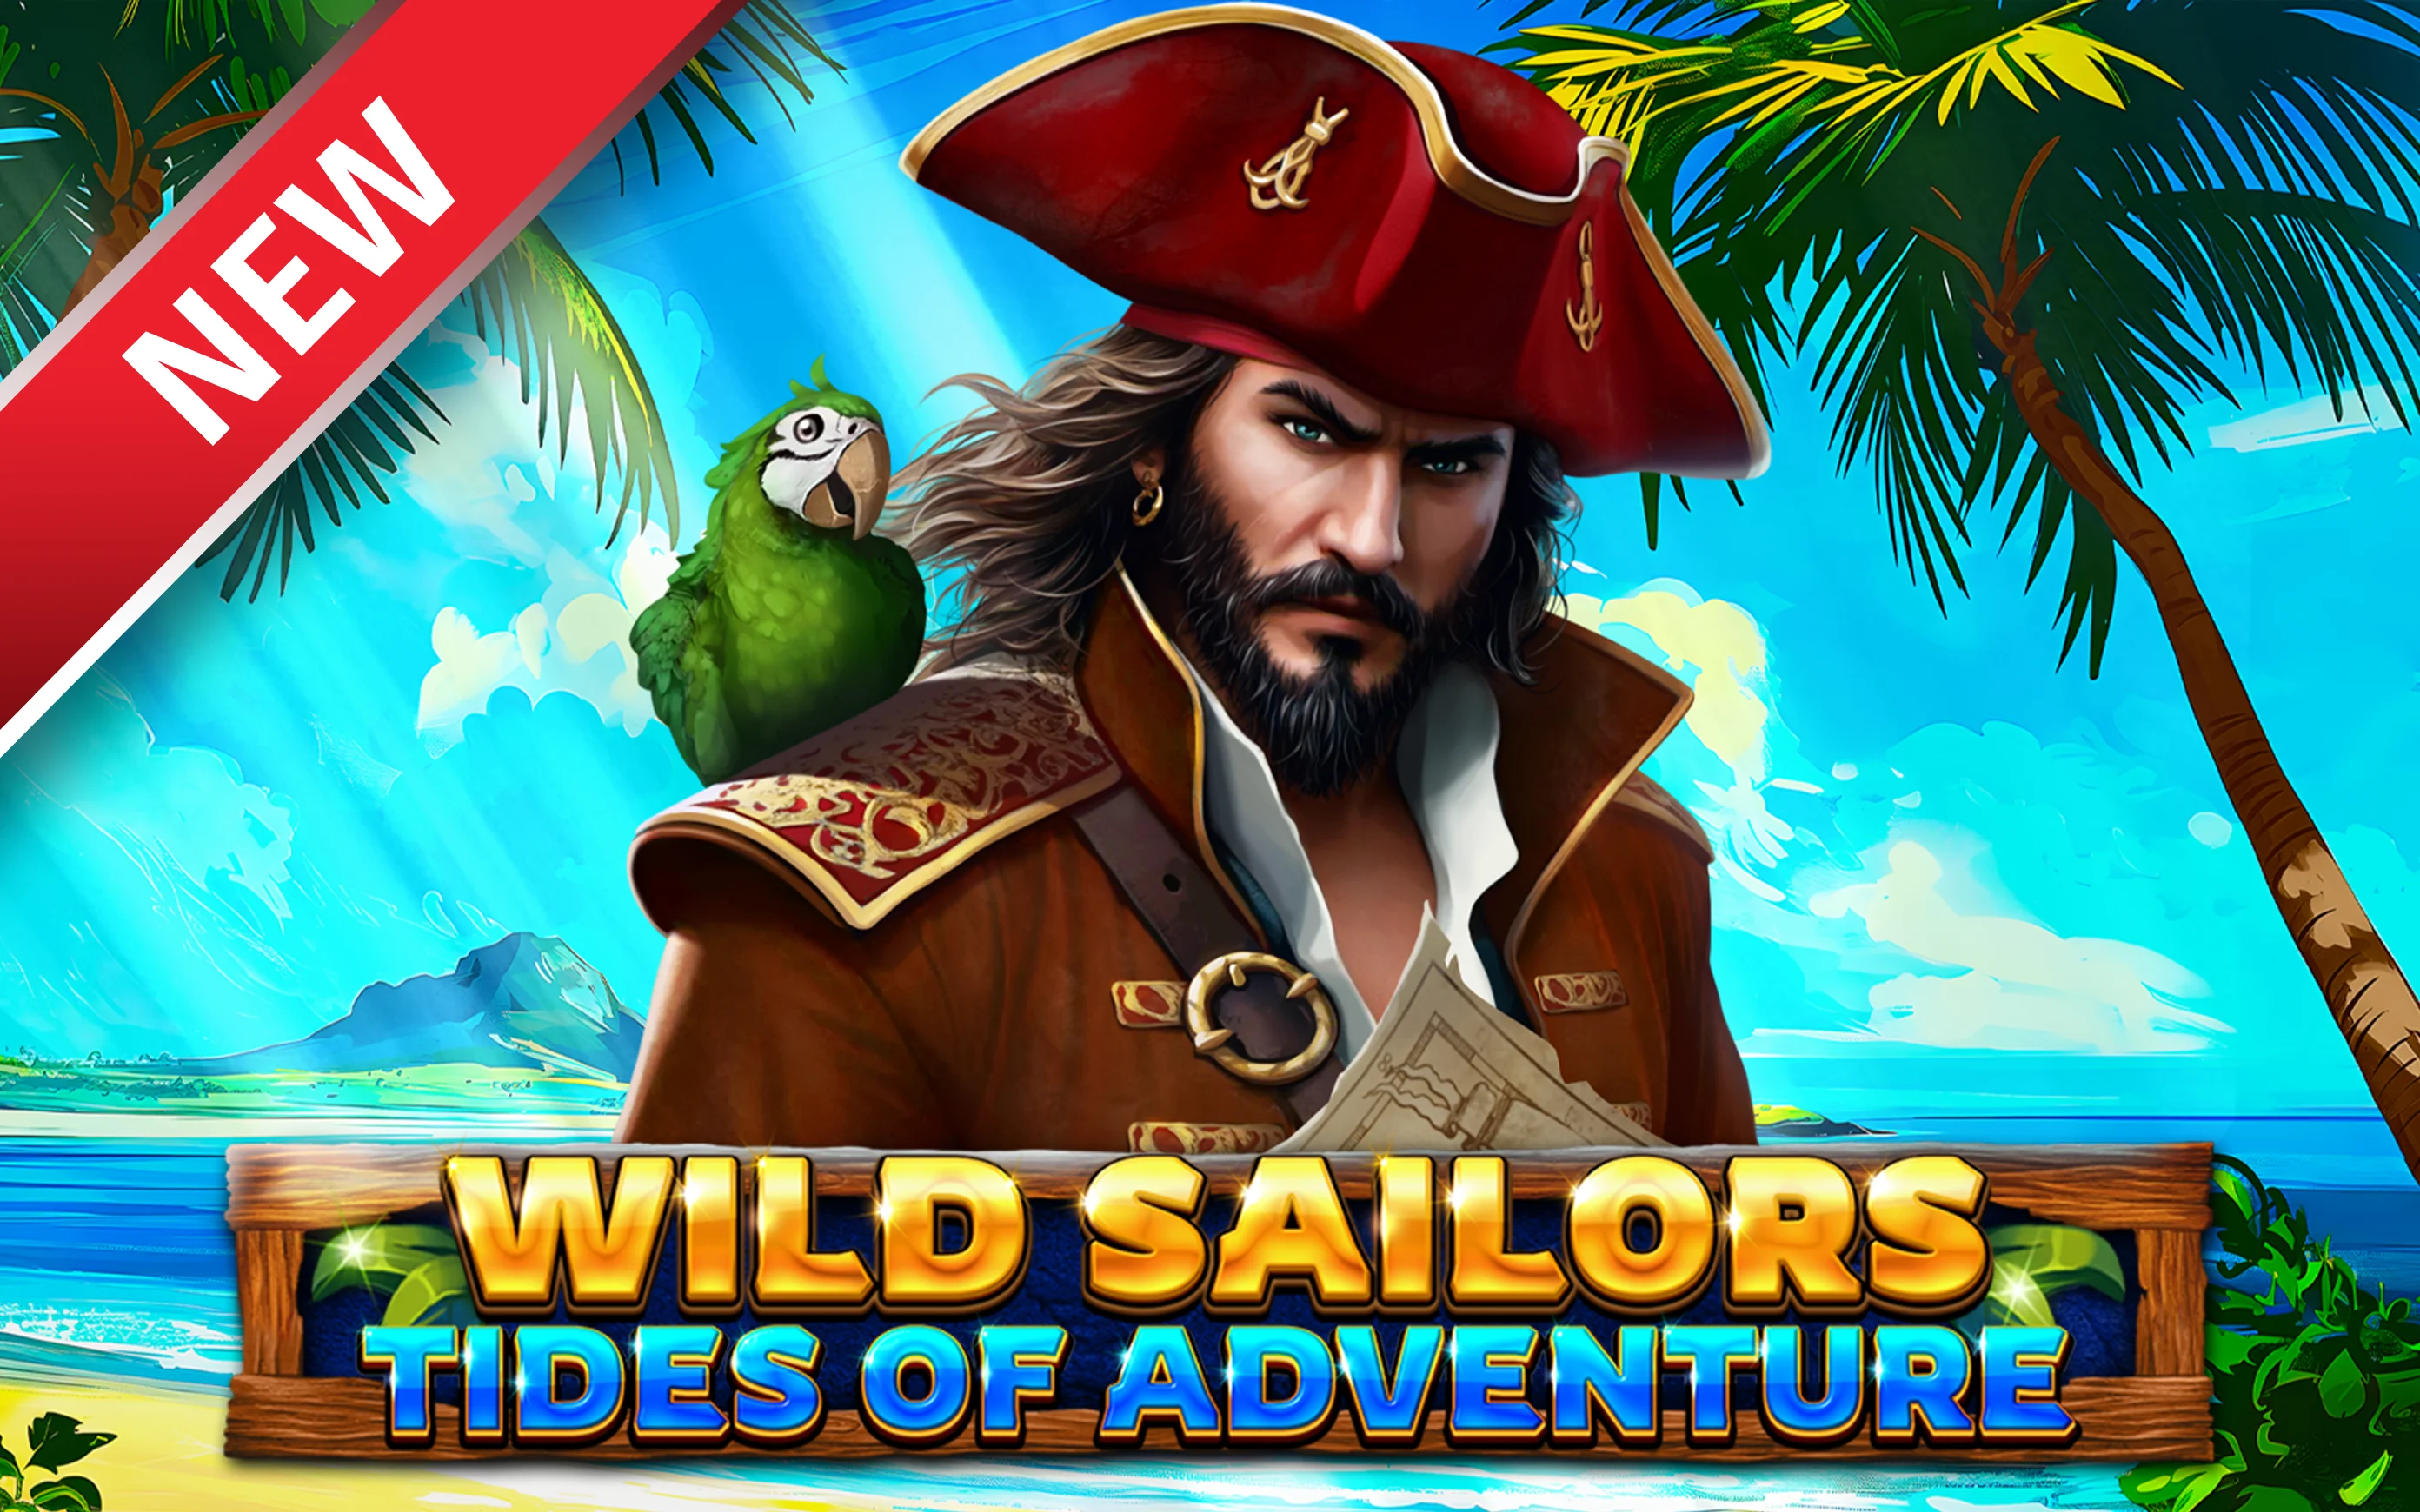 Speel Wild Sailors – Tides of Adventure op Starcasino.be online casino